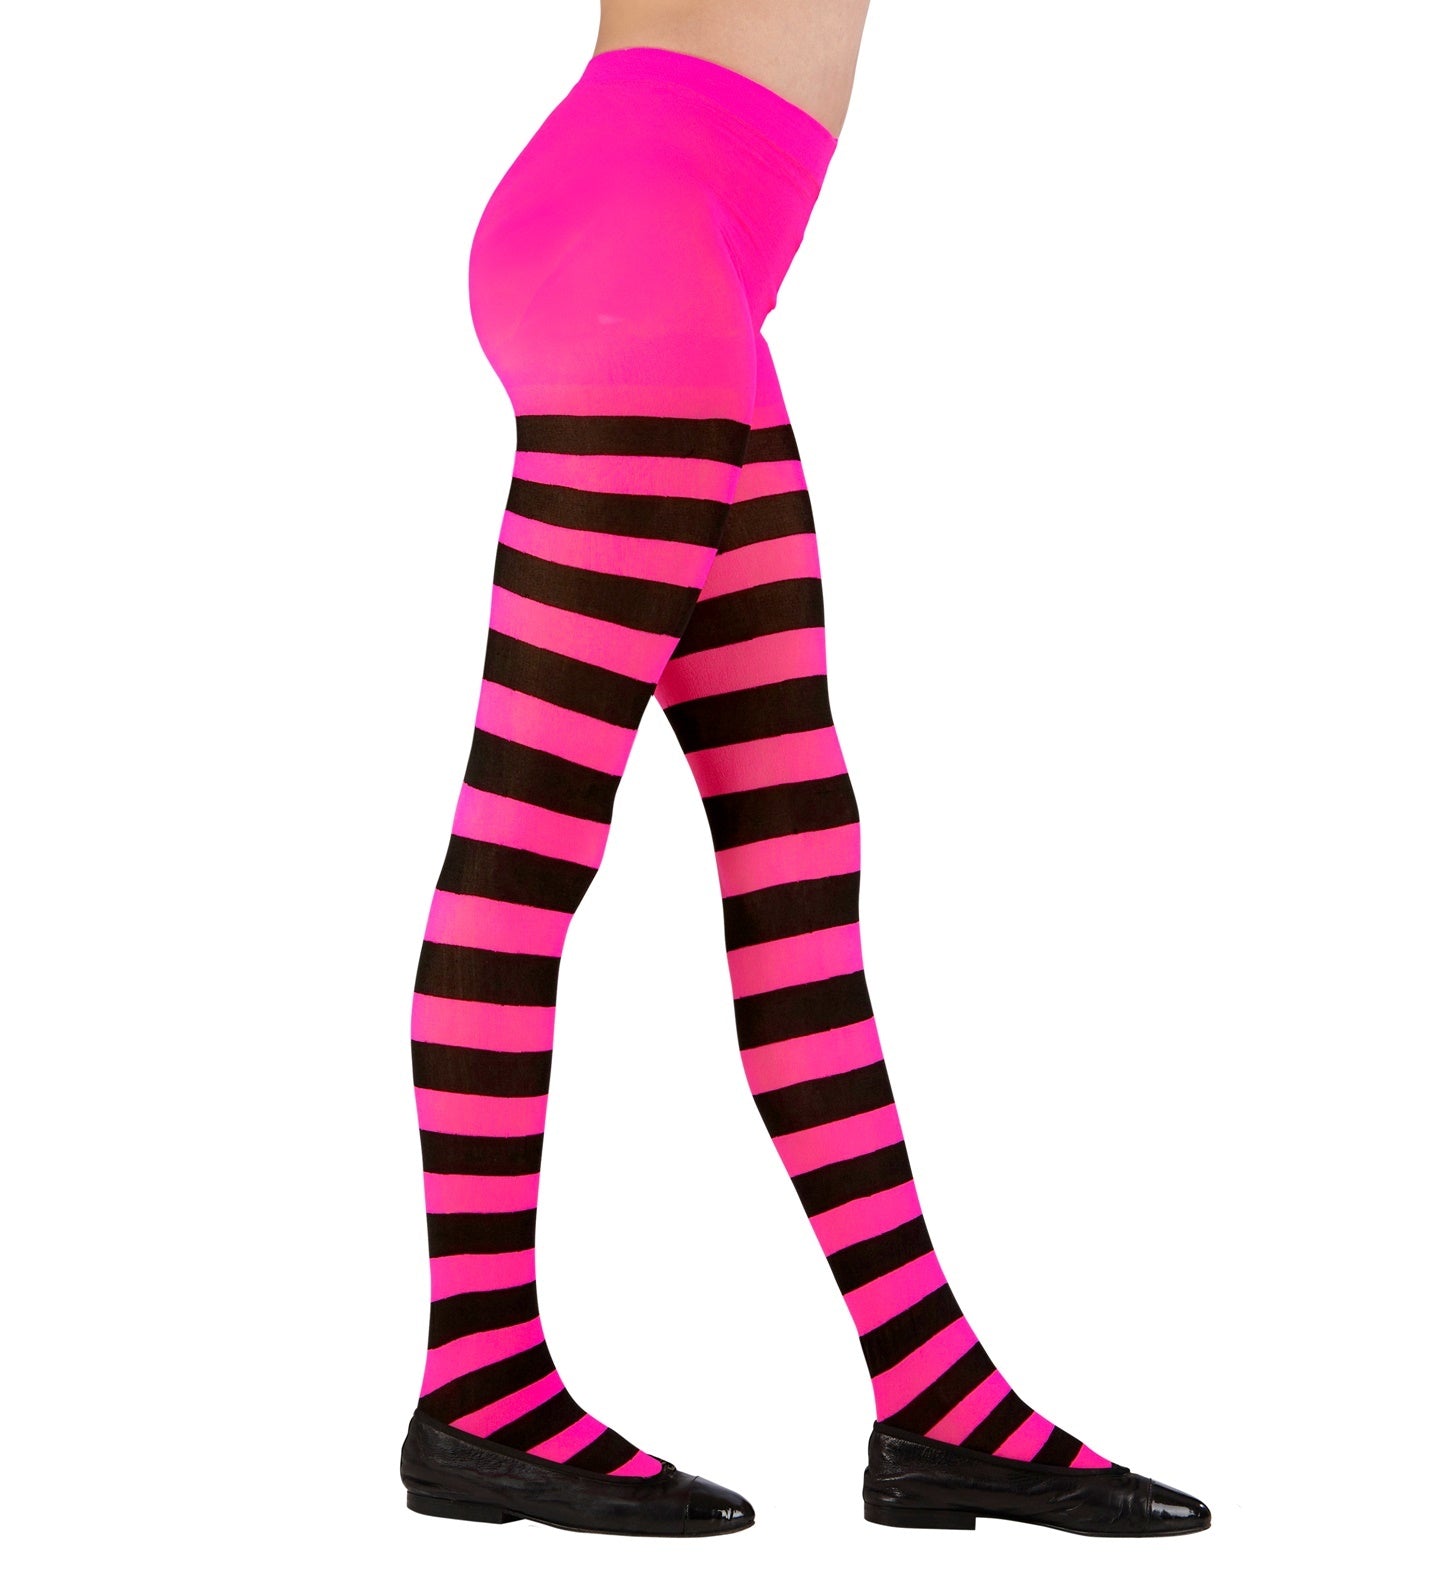 WIDMANN - Roze en zwart gestreepte panty voor kinderen - Zwart - L (11-14 jaar)